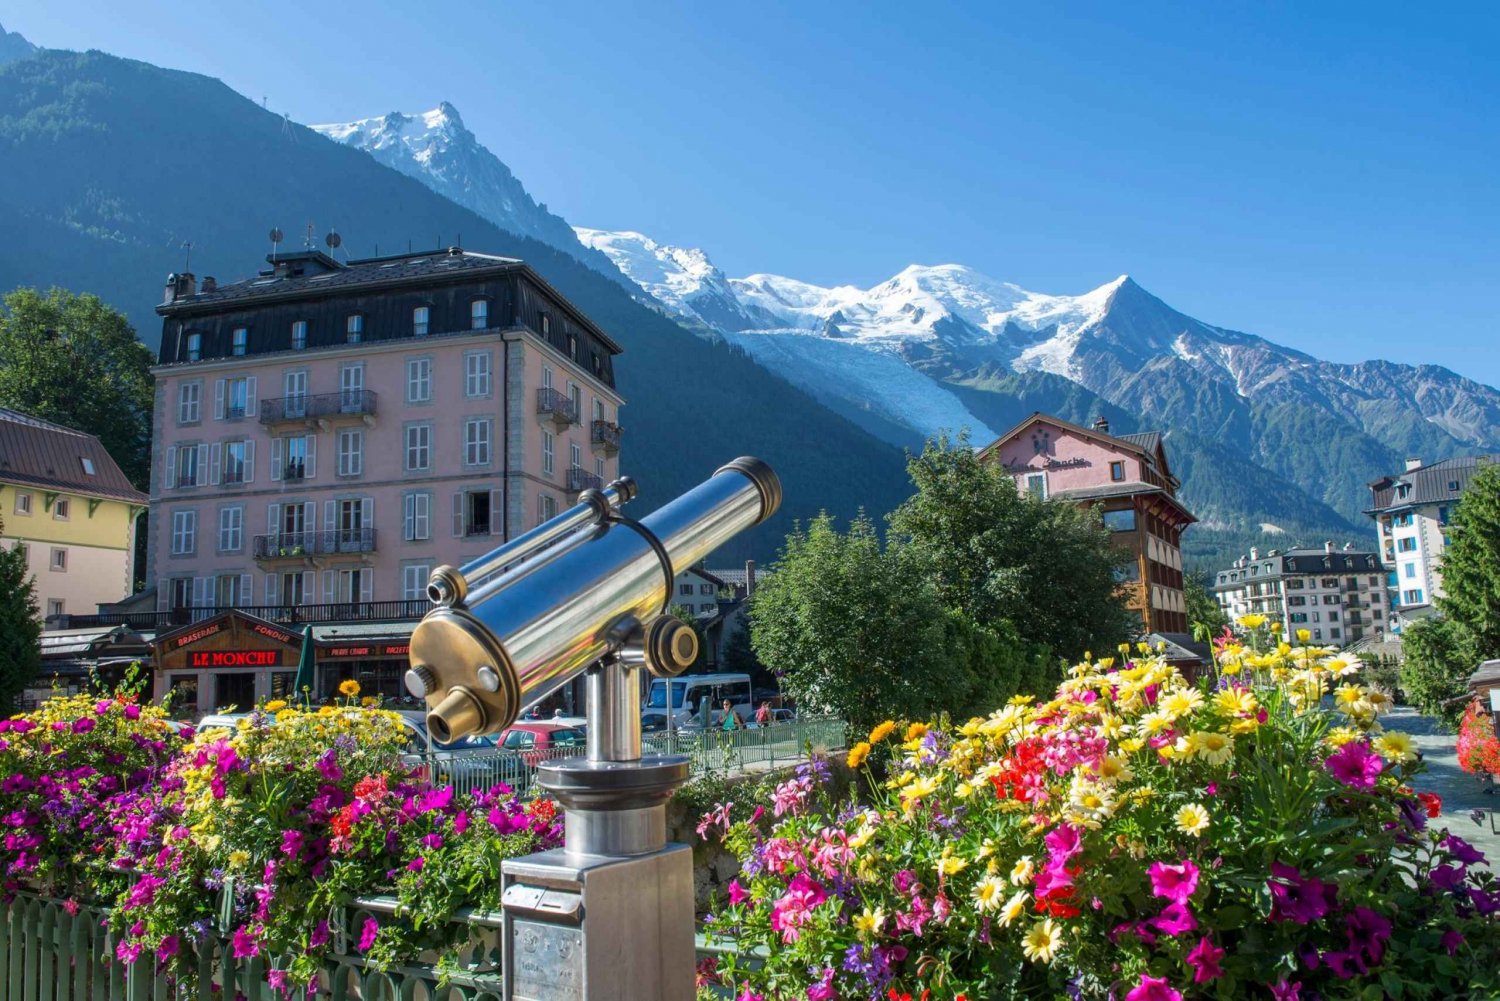 Da Ginevra: Escursione autogestita a Chamonix-Mont-Blanc